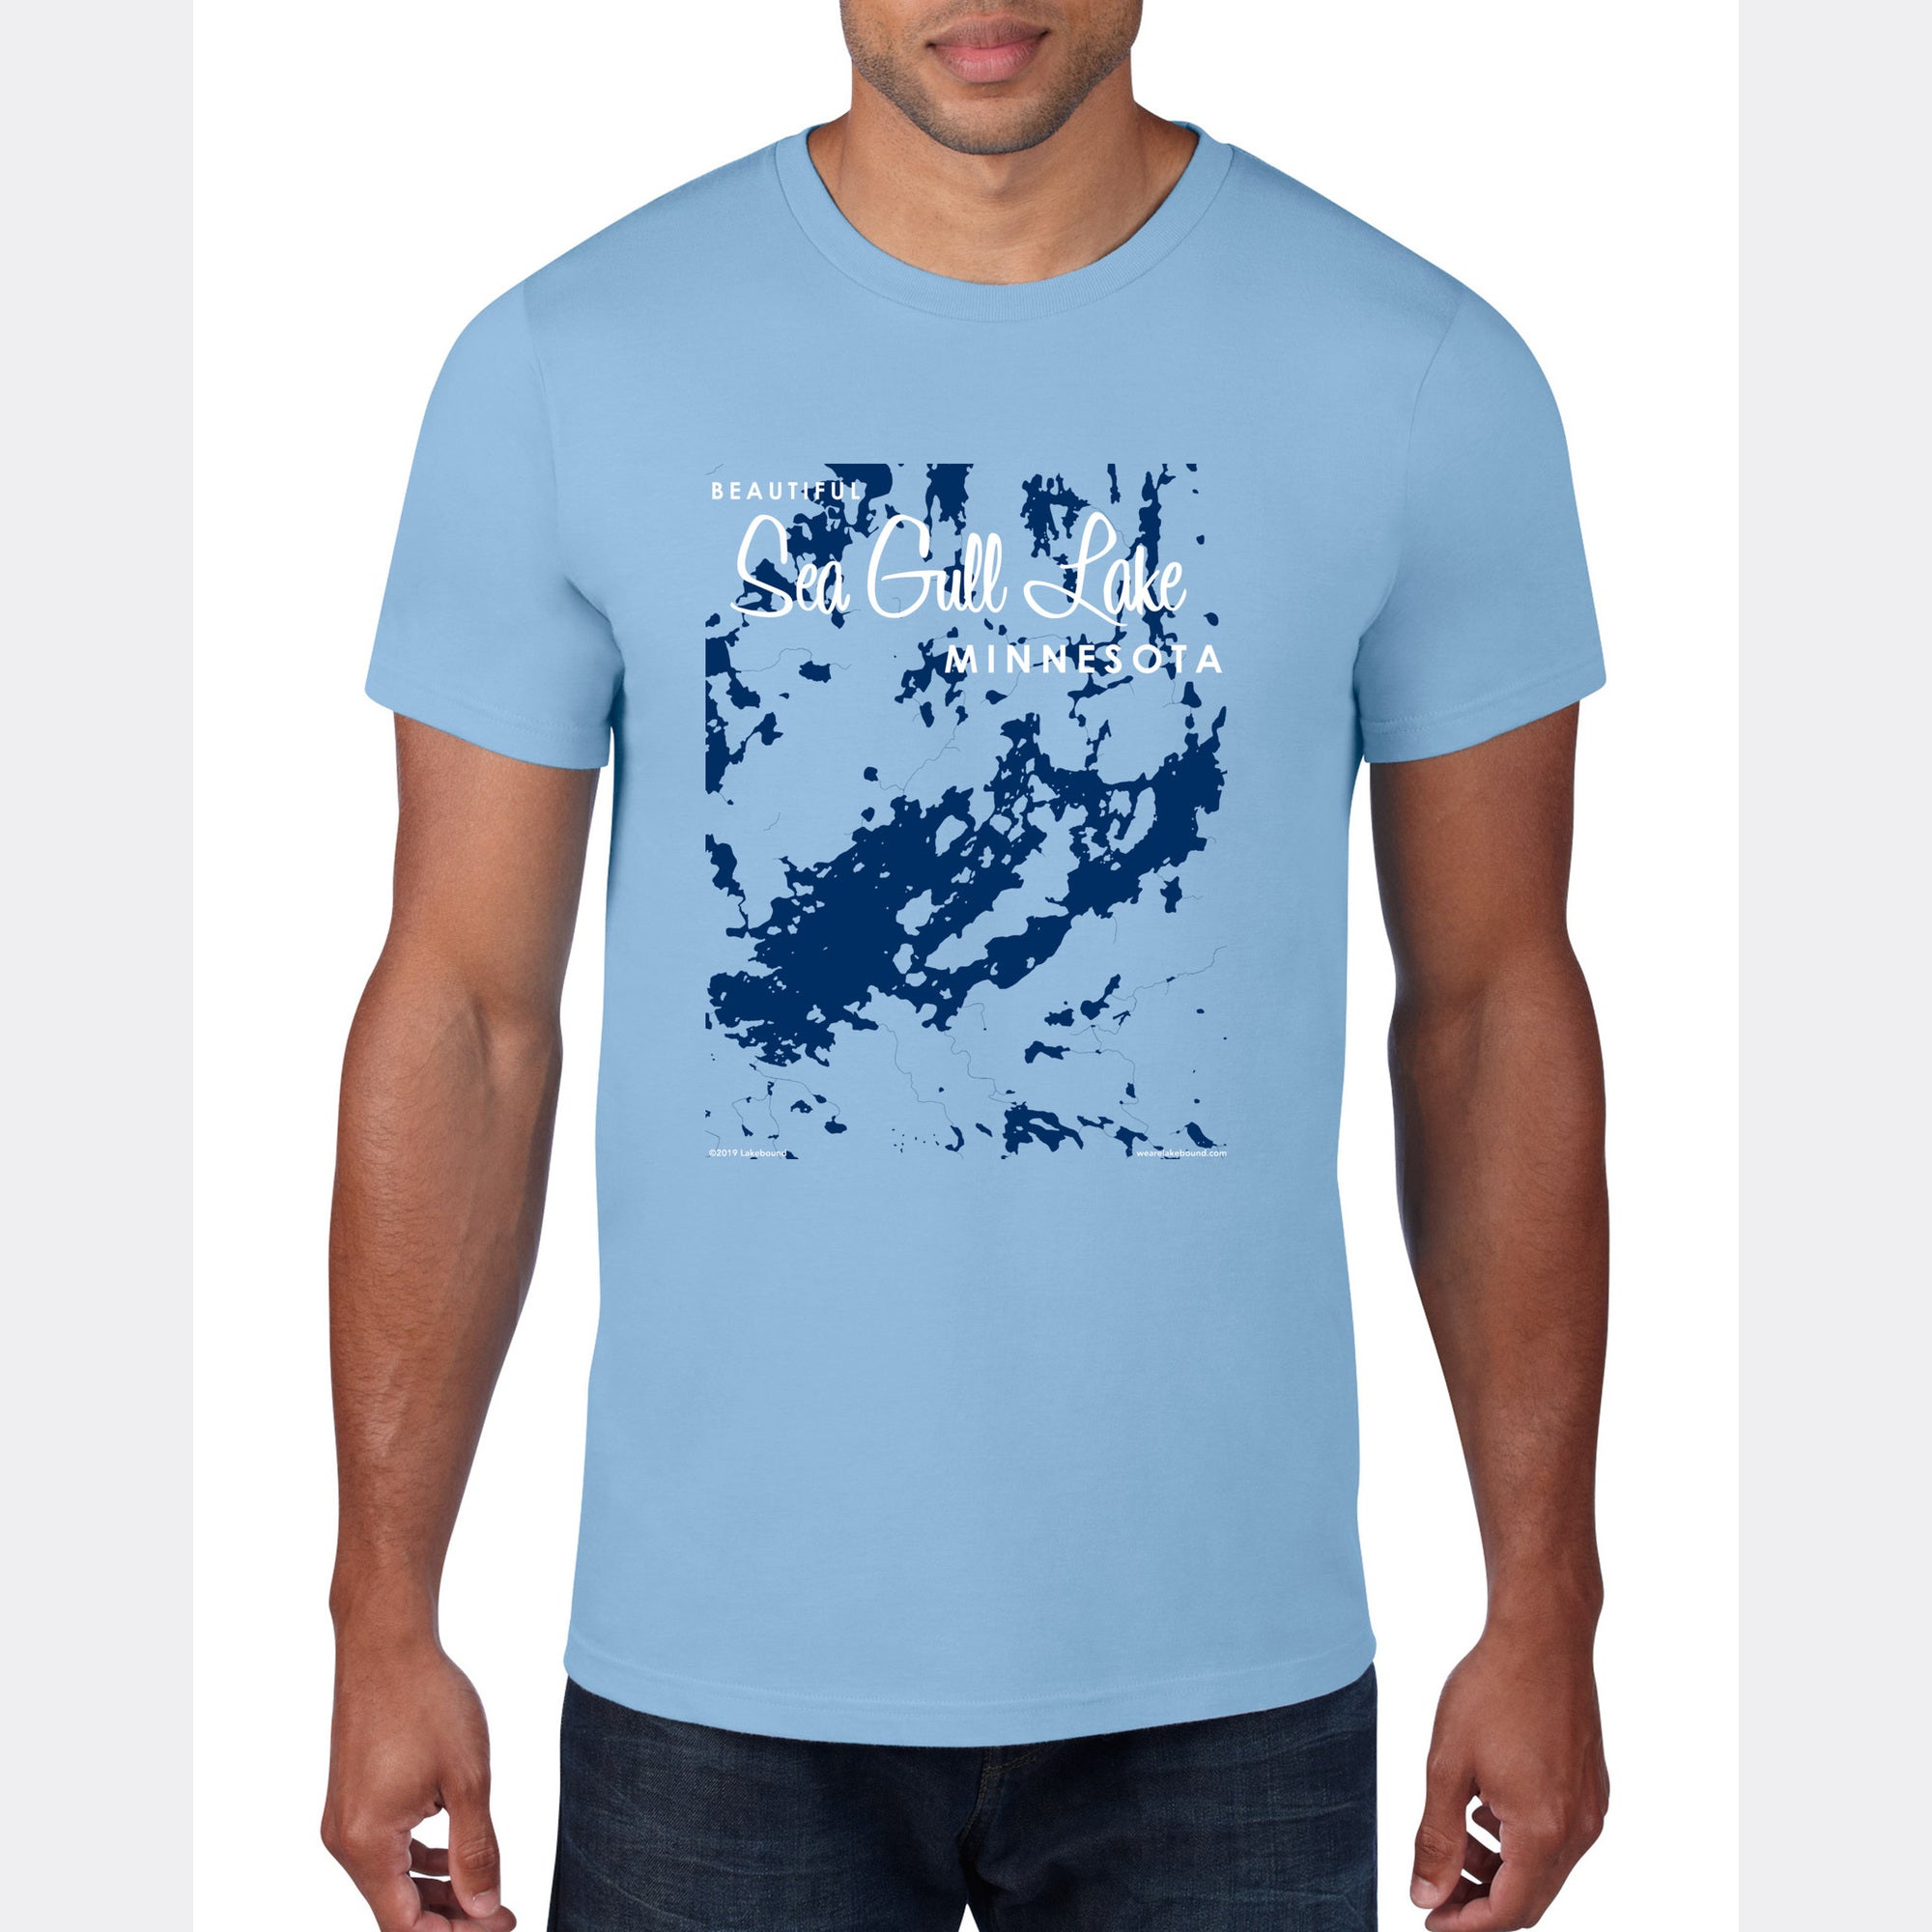 Sea Gull Lake Minnesota, T-Shirt